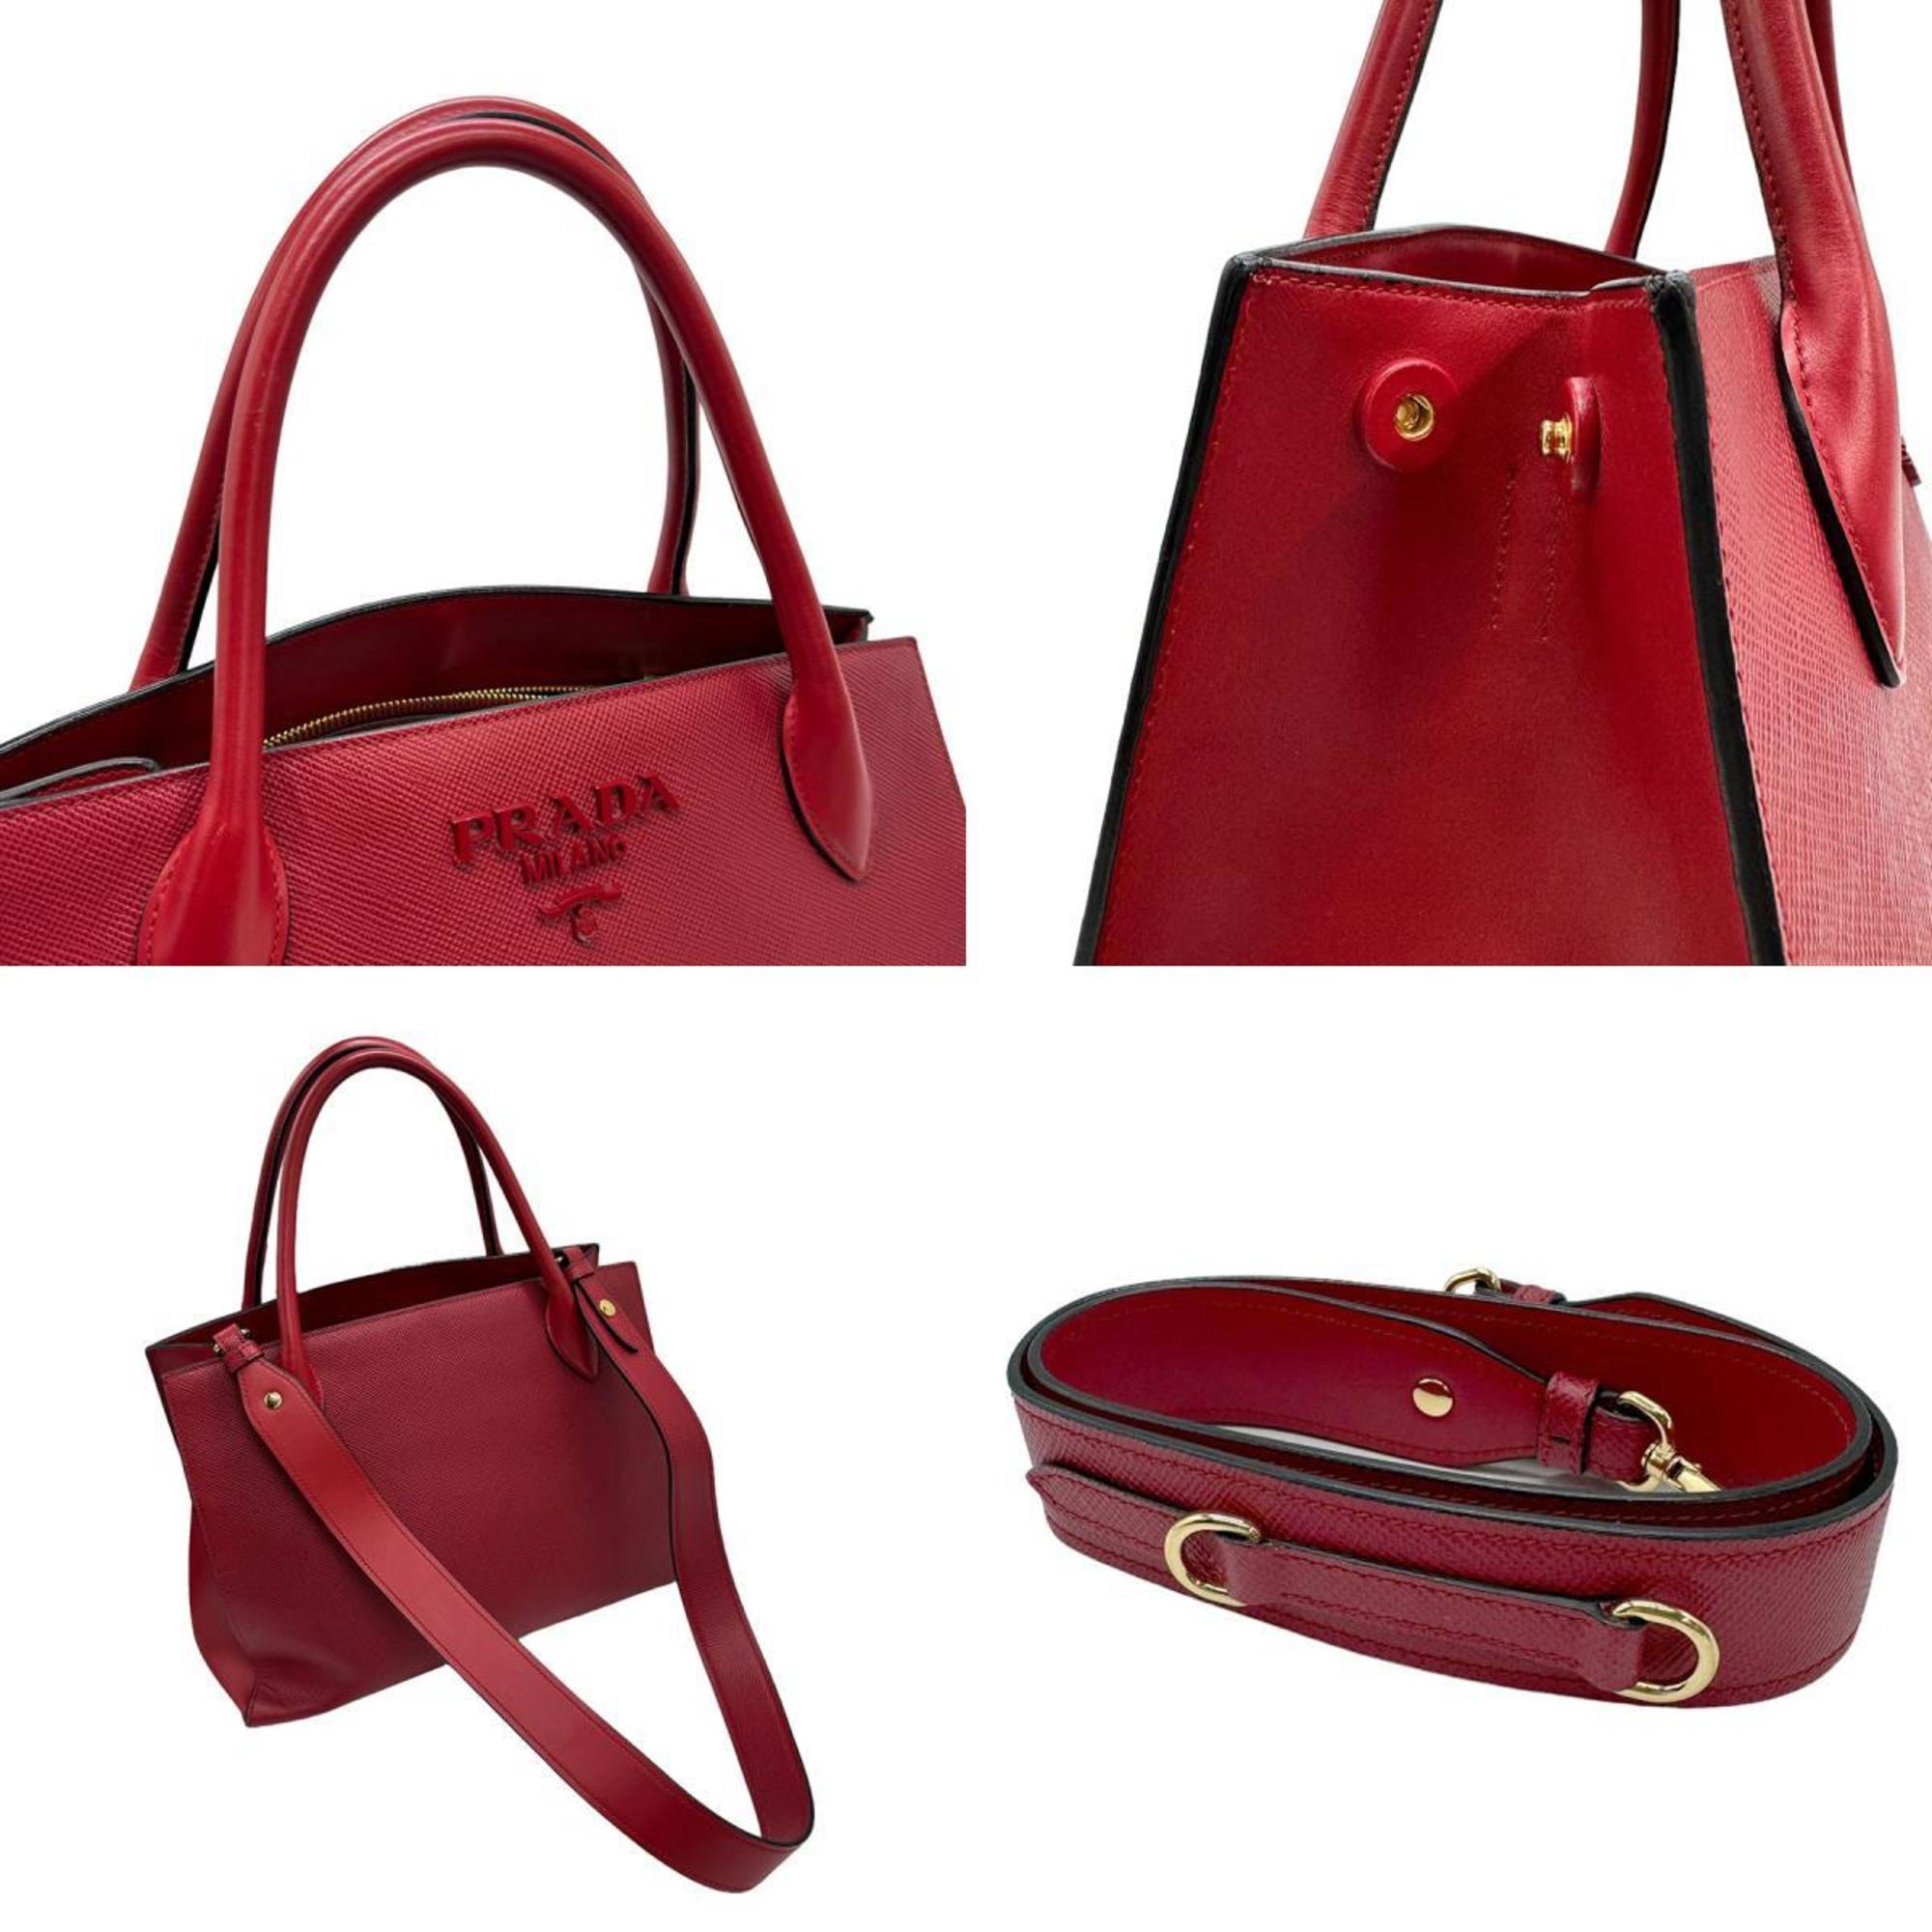 PRADA Shoulder Bag Handbag Leather Red Women's z0929